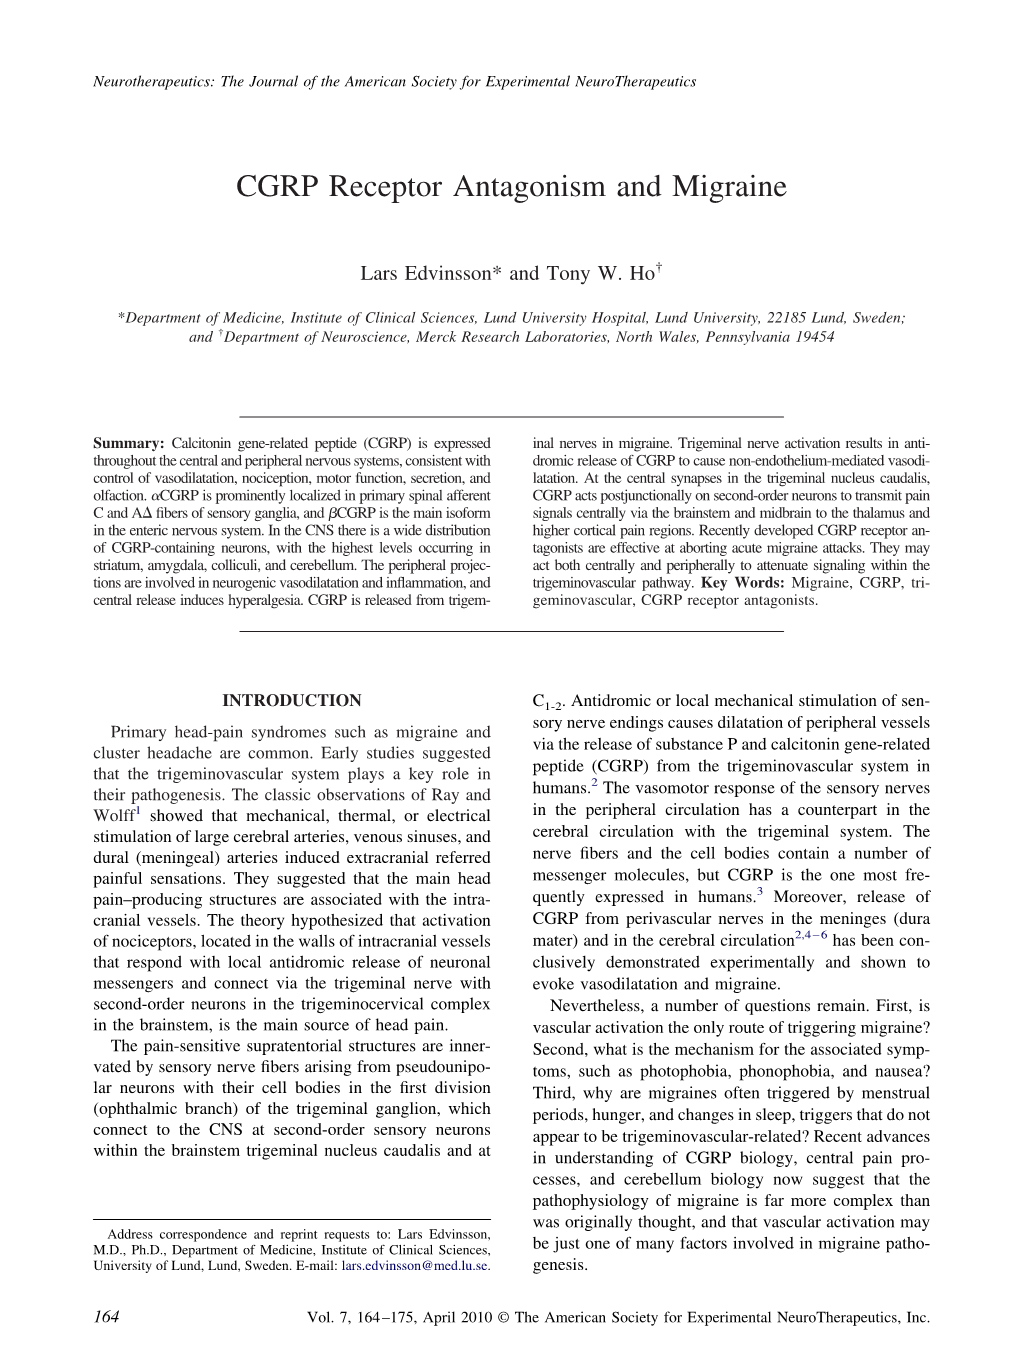 CGRP Receptor Antagonism and Migraine